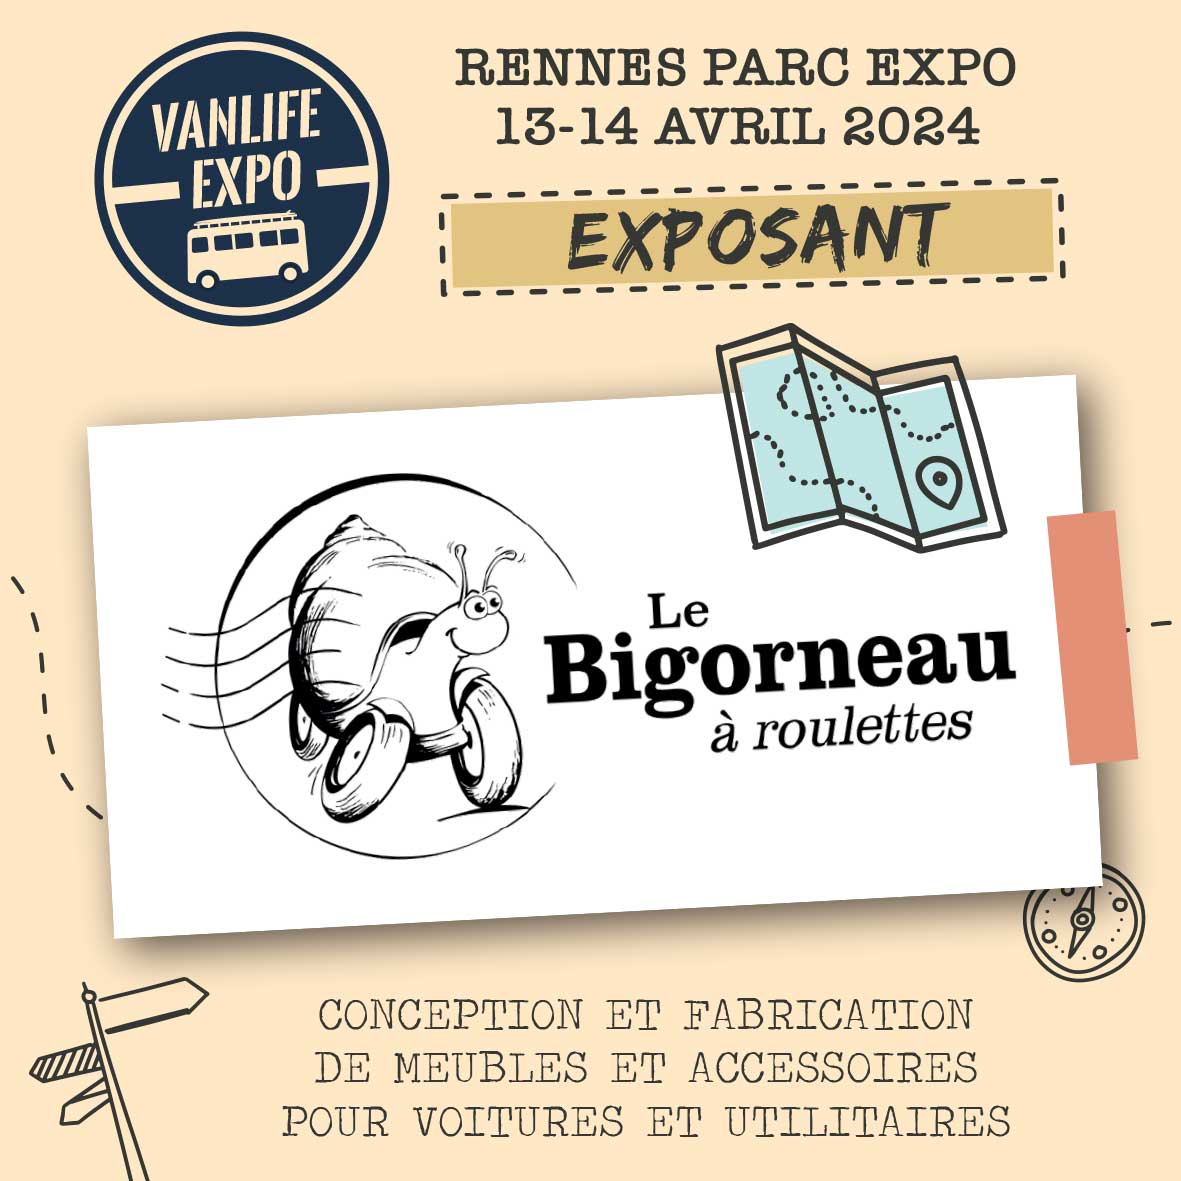 Featured image for “Le Bigorneau à roulettes”